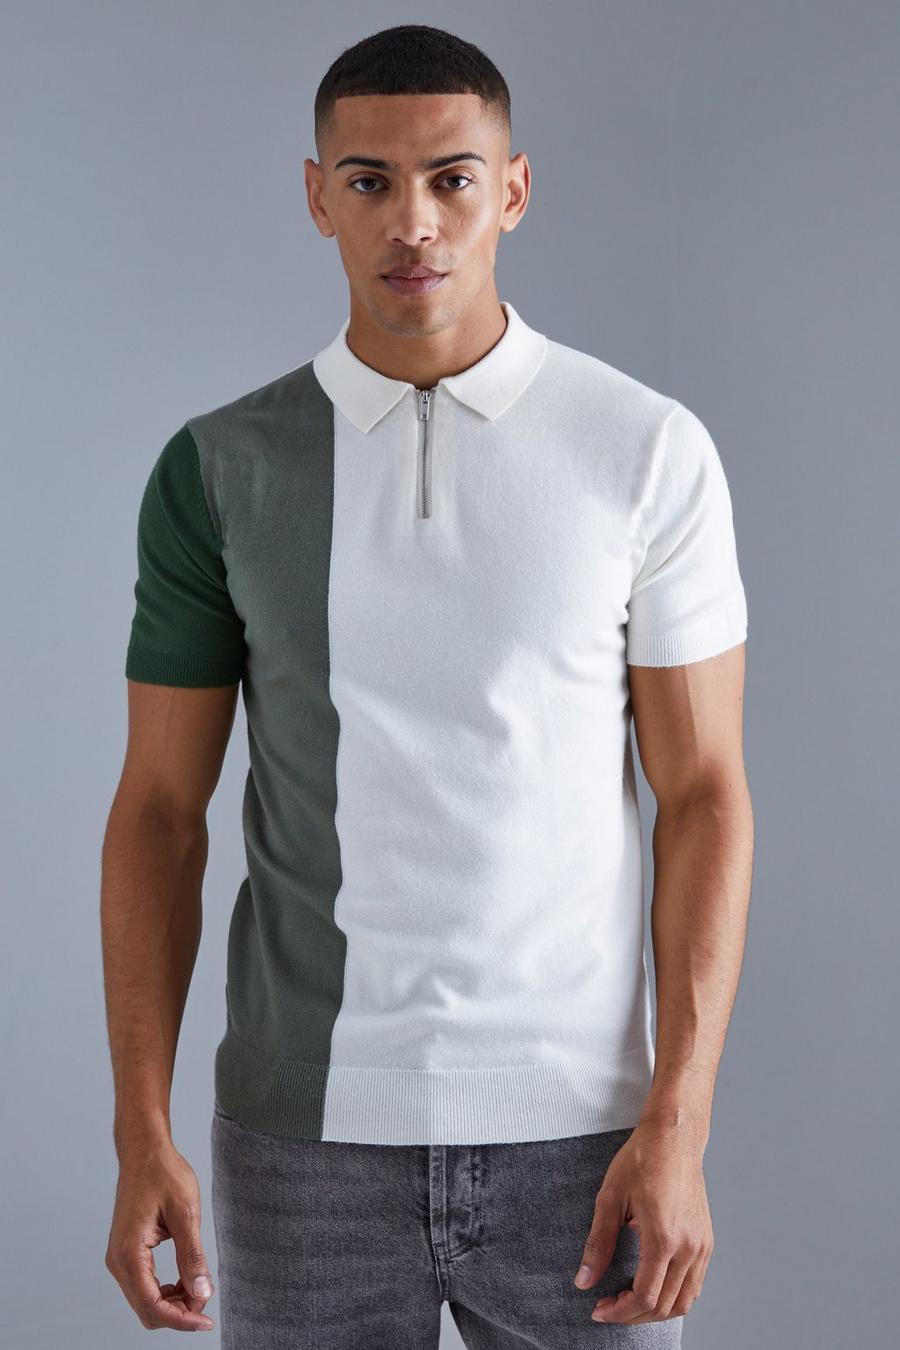 Khaki cap-sleeves silk shirt